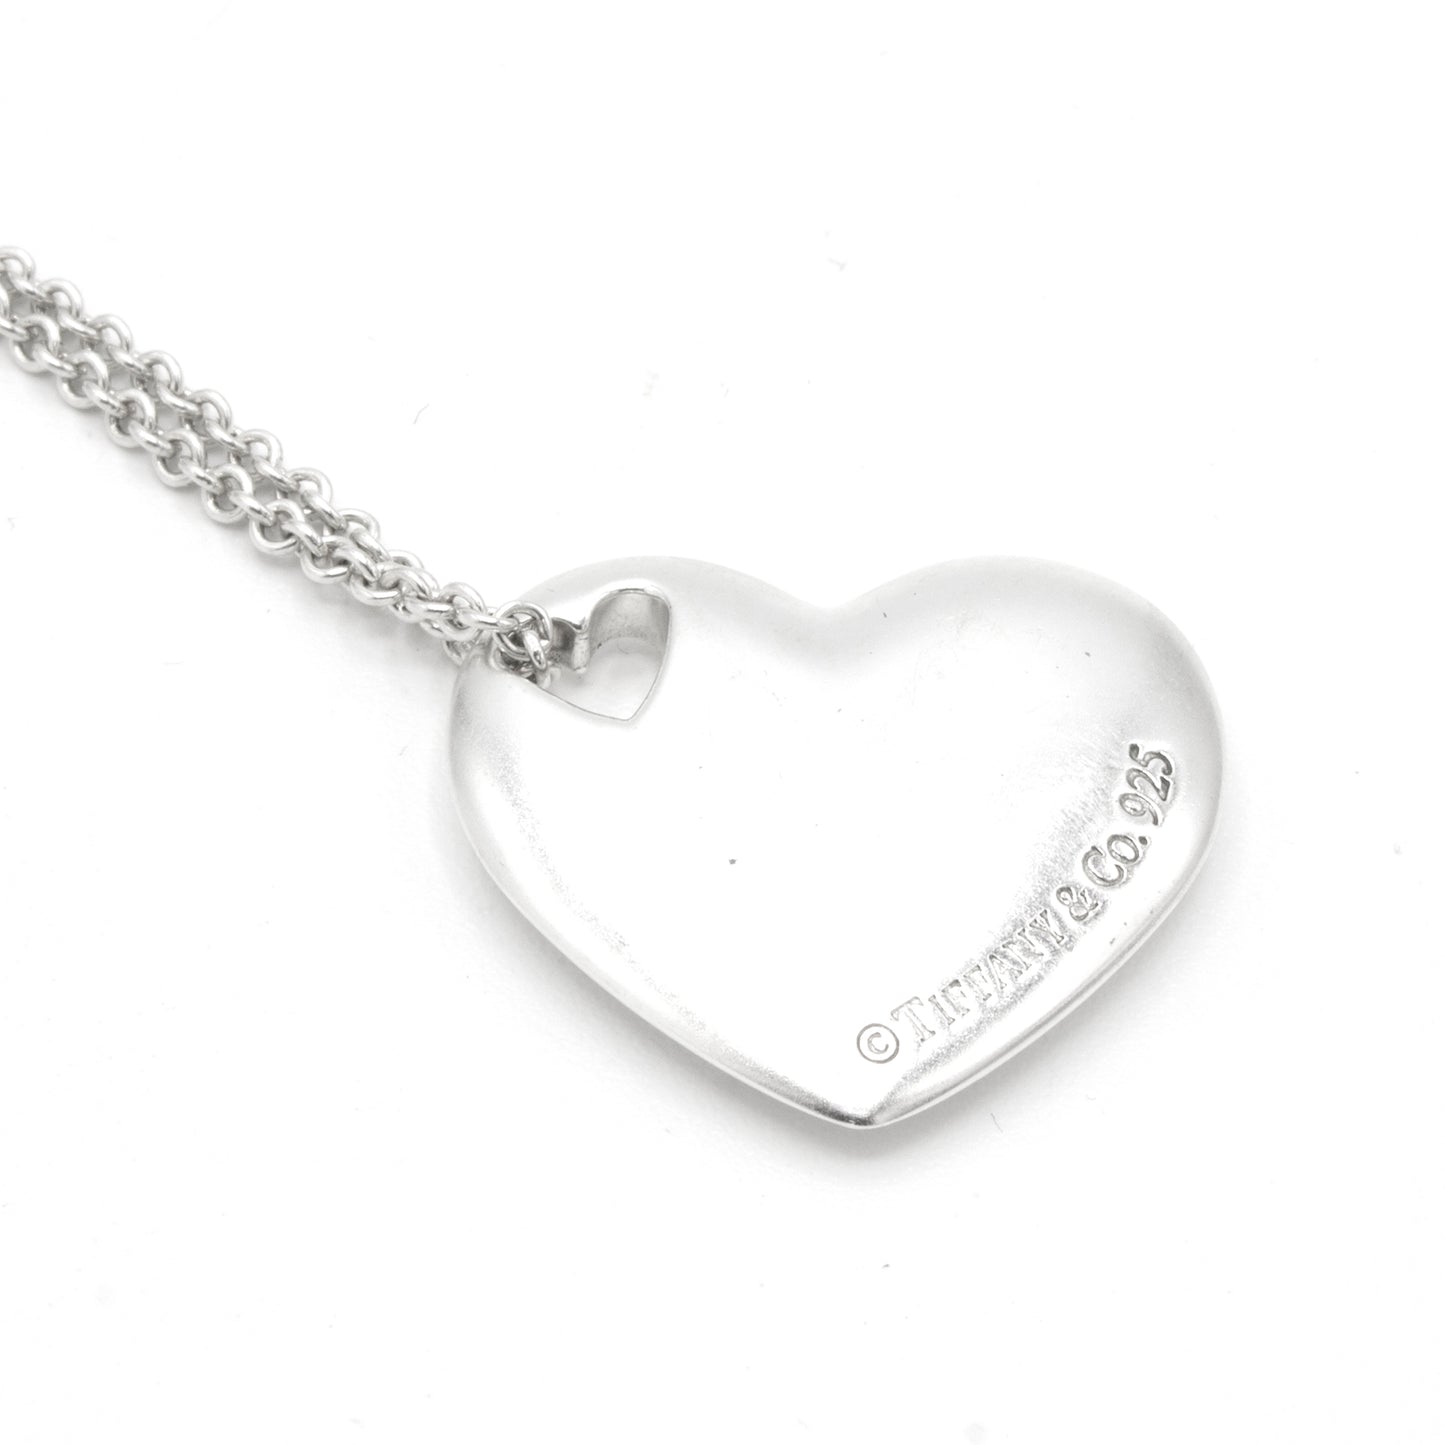 Tiffany & Co "2 Heart" necklace